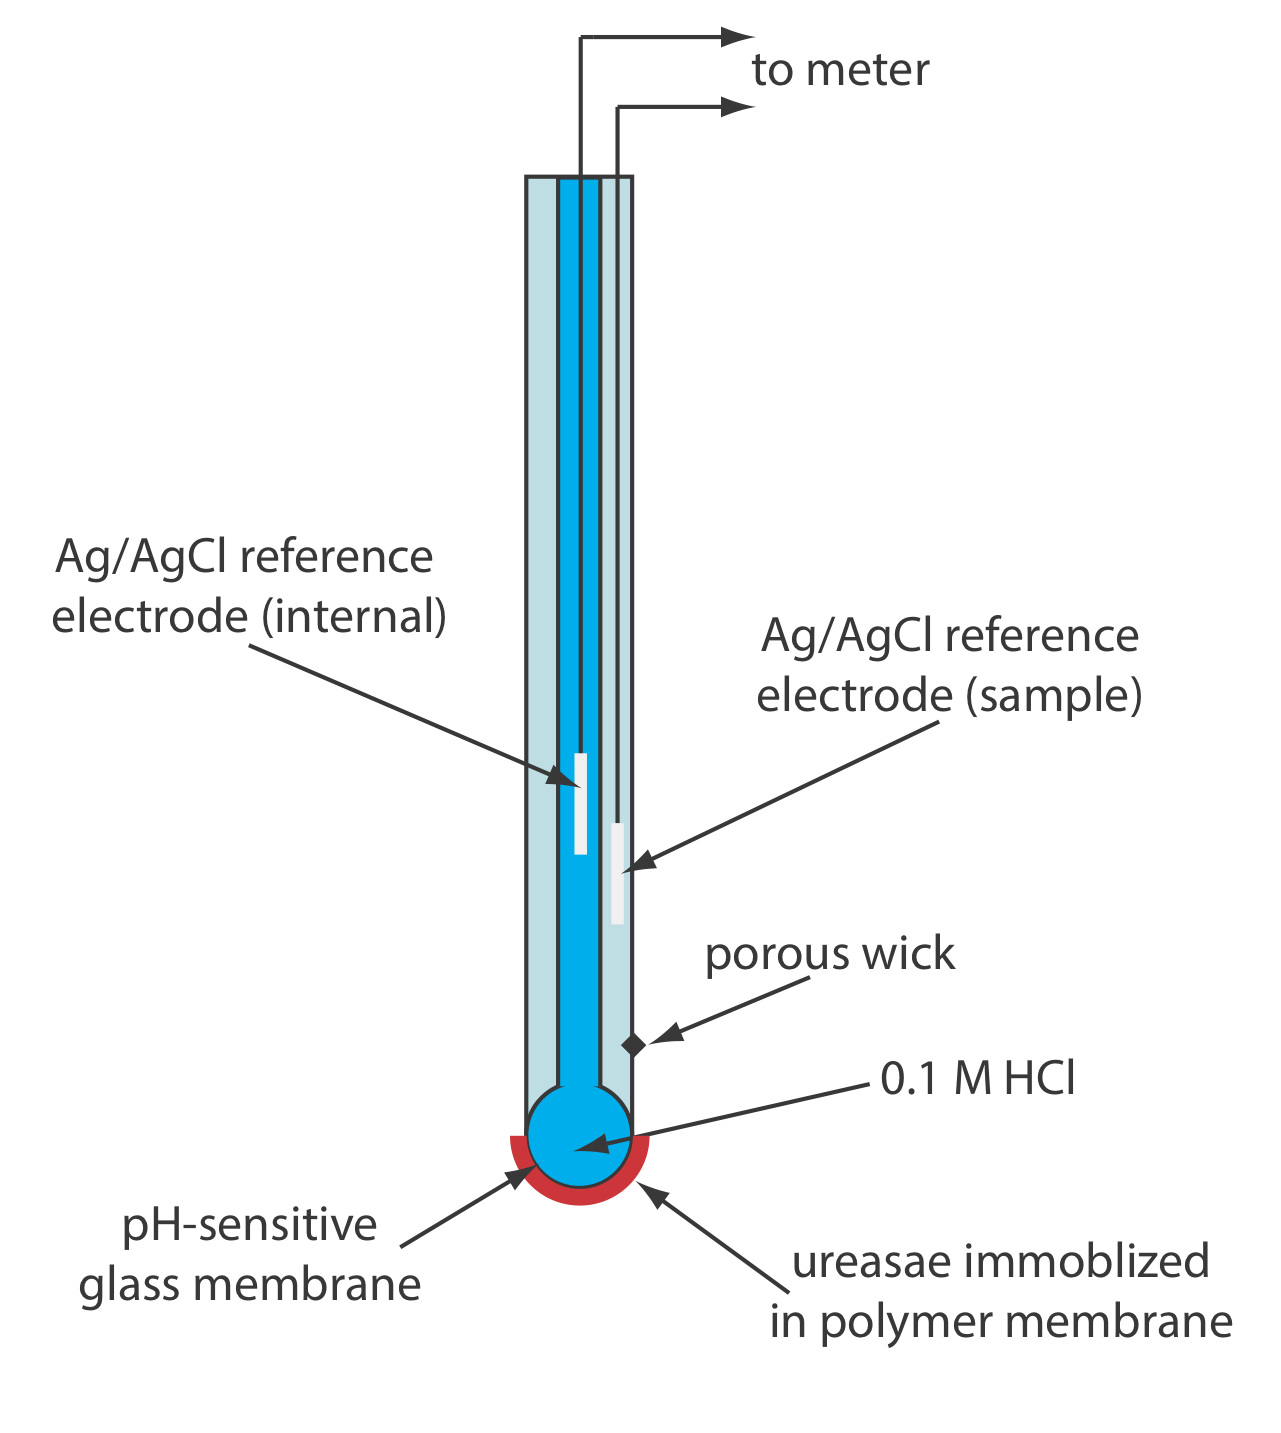 Diagrama esquemático de un biosensor potenciométrico basado en enzimas para urea en el que se inmoviliza ureasa en una membrana polimérica recubierta sobre la membrana de vidrio sensible al pH de un electrodo de pH.